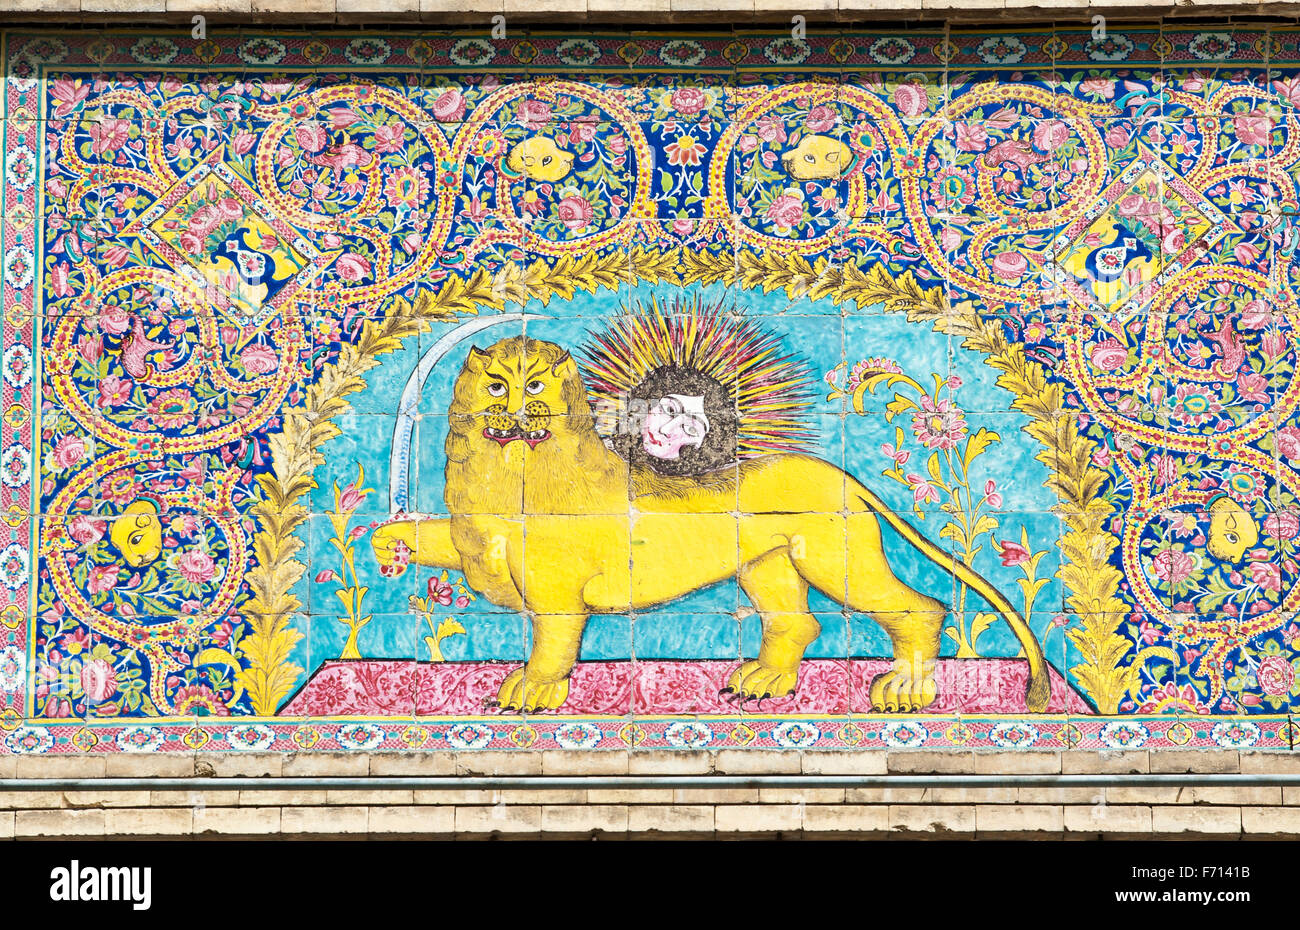 Symbole national persan, bien plus de lion avec l'épée, carreaux émaillés, le Golestan Palace, Téhéran, Iran Banque D'Images